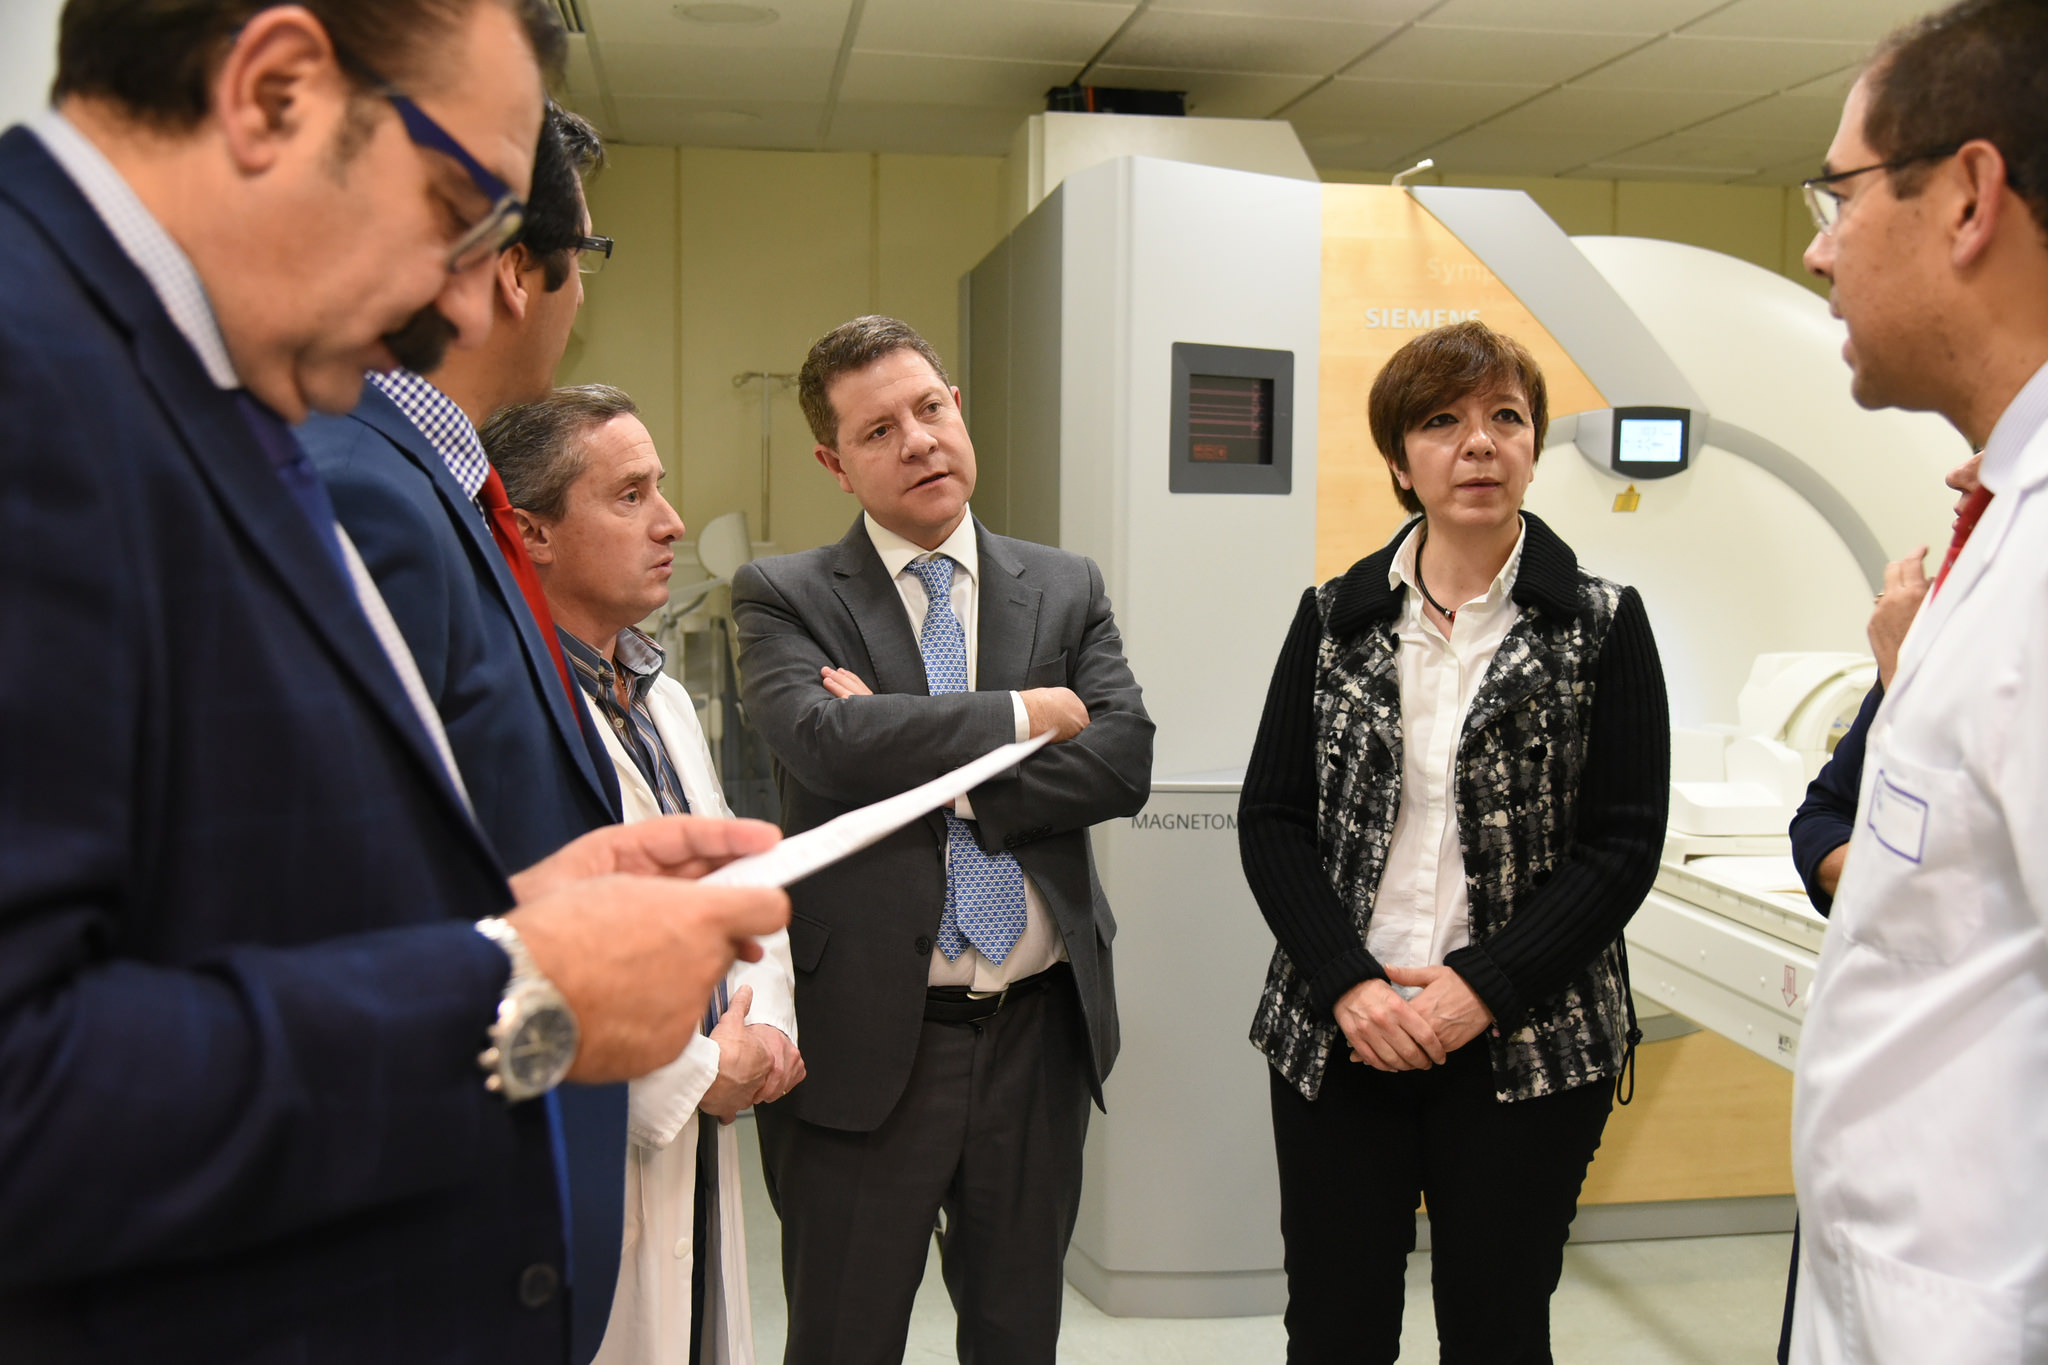 El incremento de sesiones y de horas de funcionamiento de la nueva resonancia magnética del Hospital de Alcázar permitirá realizar unas 5.500 pruebas más al año